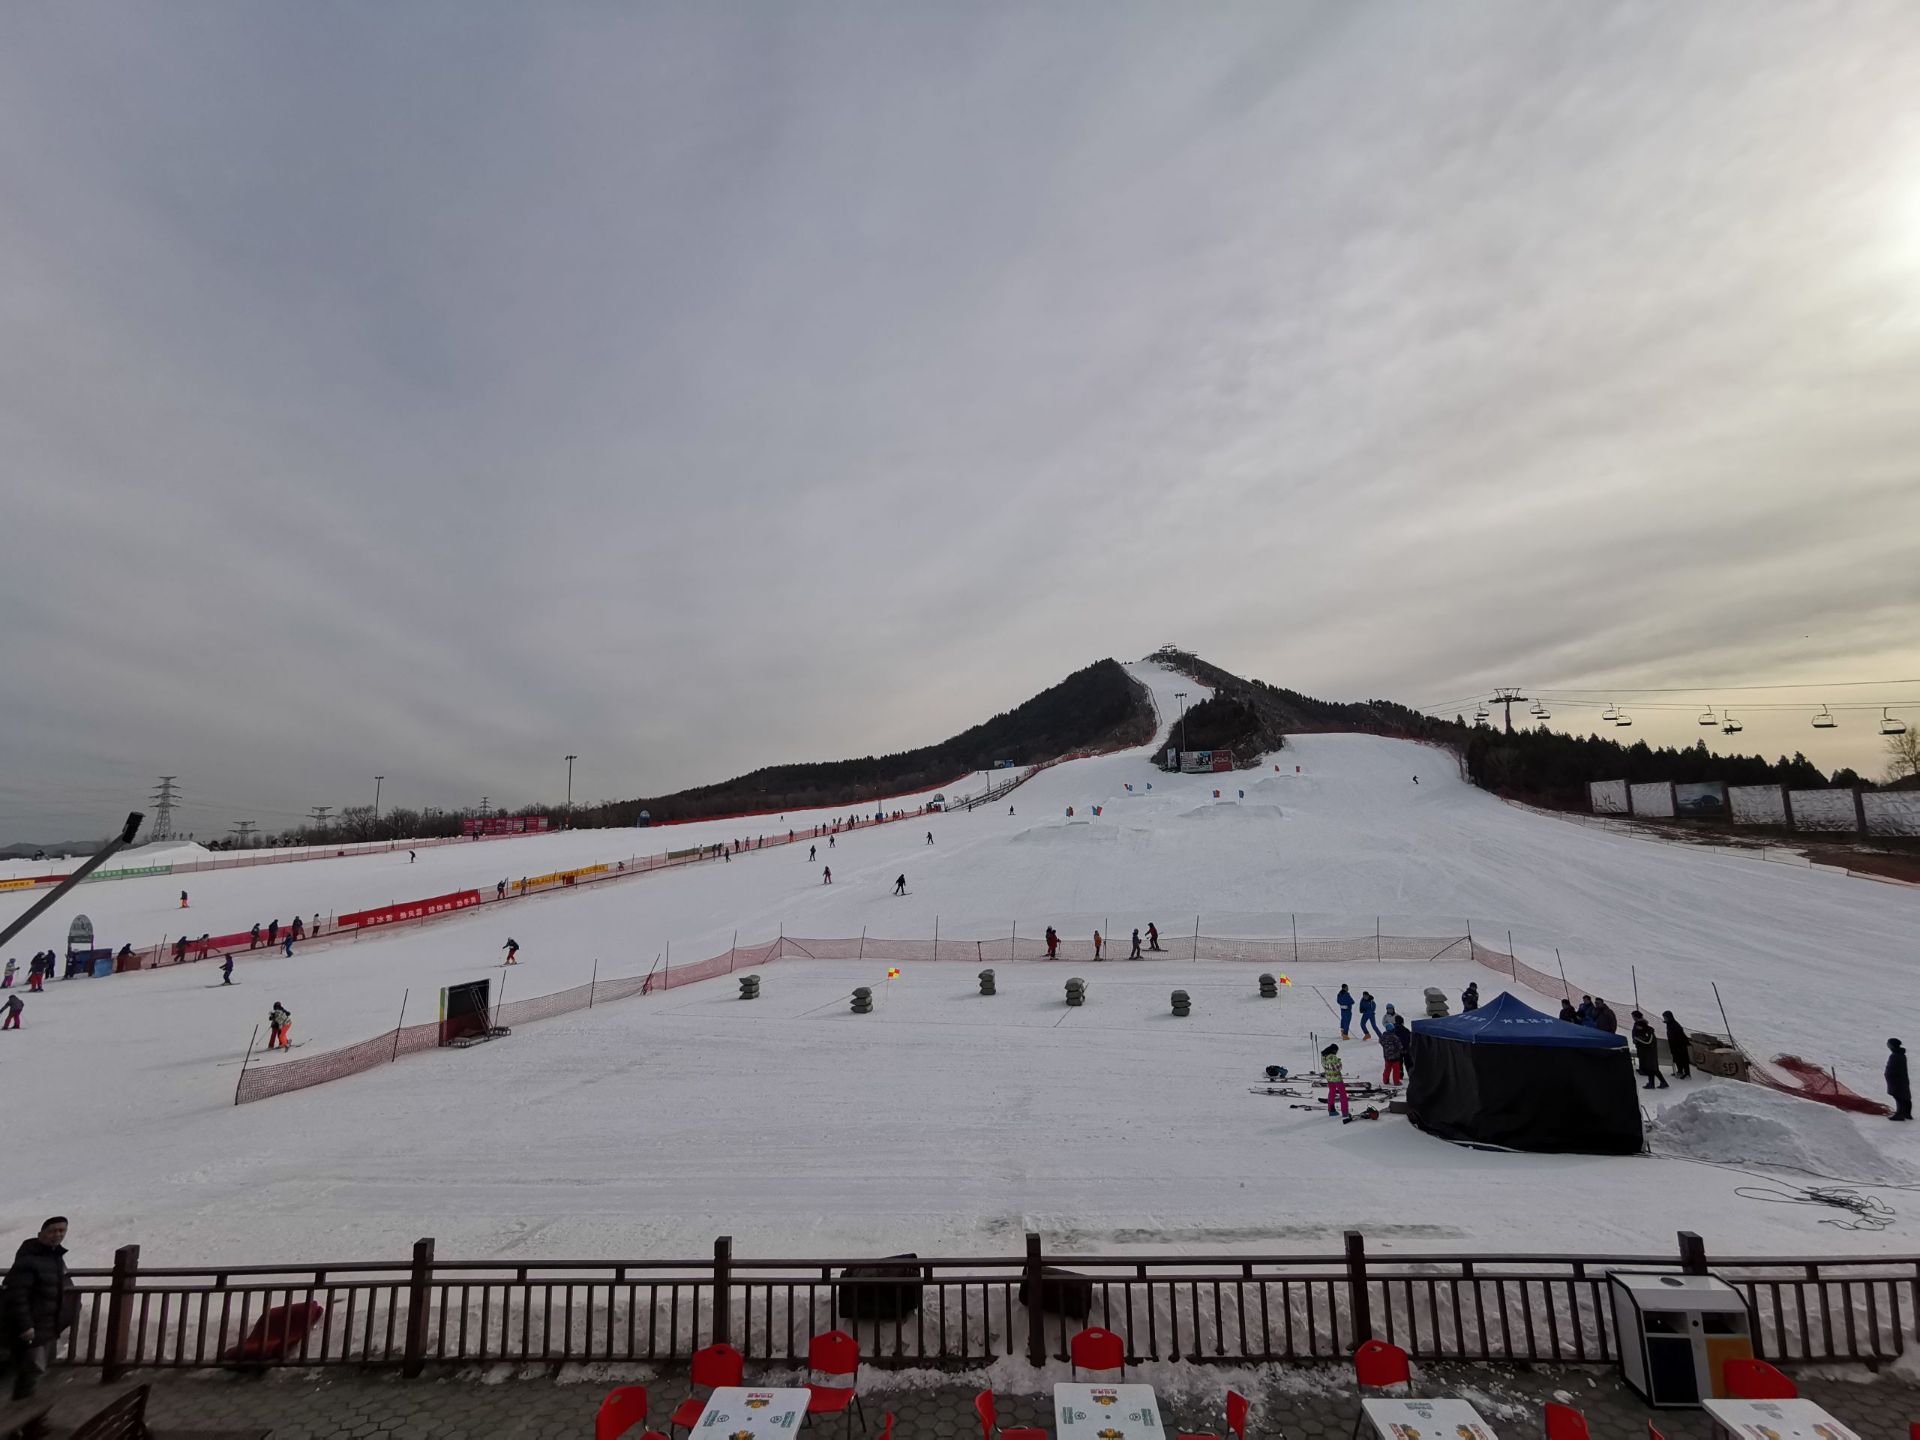 莲花山滑雪场景点,京东滑雪场推荐适合当日往返 雪季到了,在北京虽然